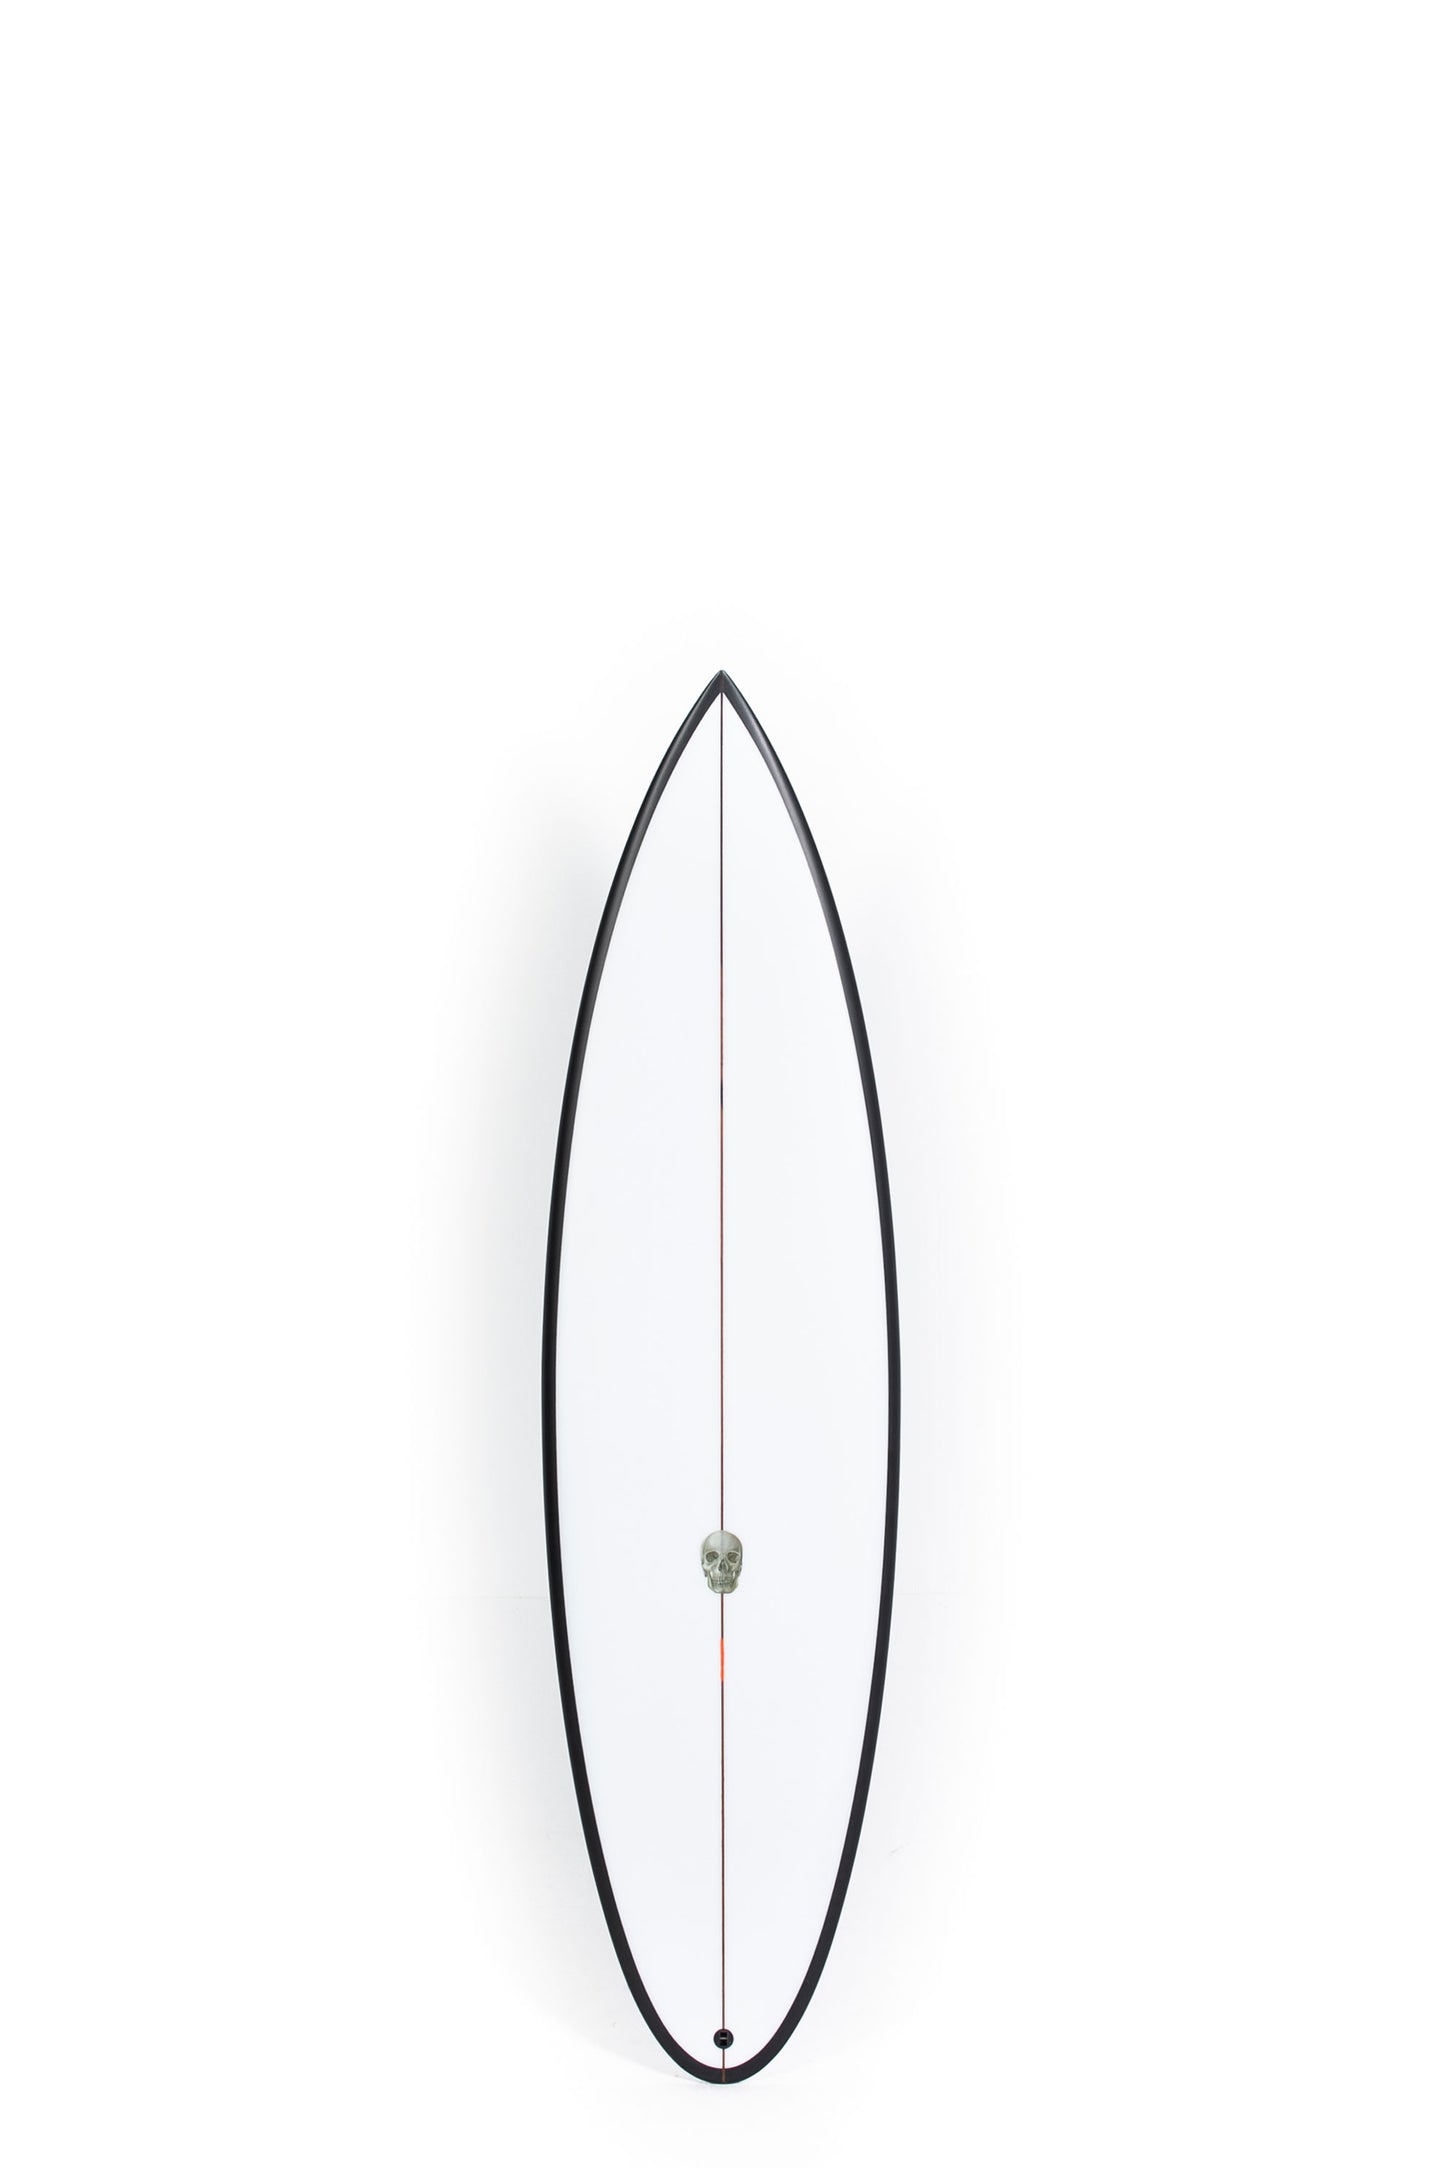 Pukas-Surf-Shop-Pukas-Surfboards-OP4-Chris-Christenson-6_2_-CX05552